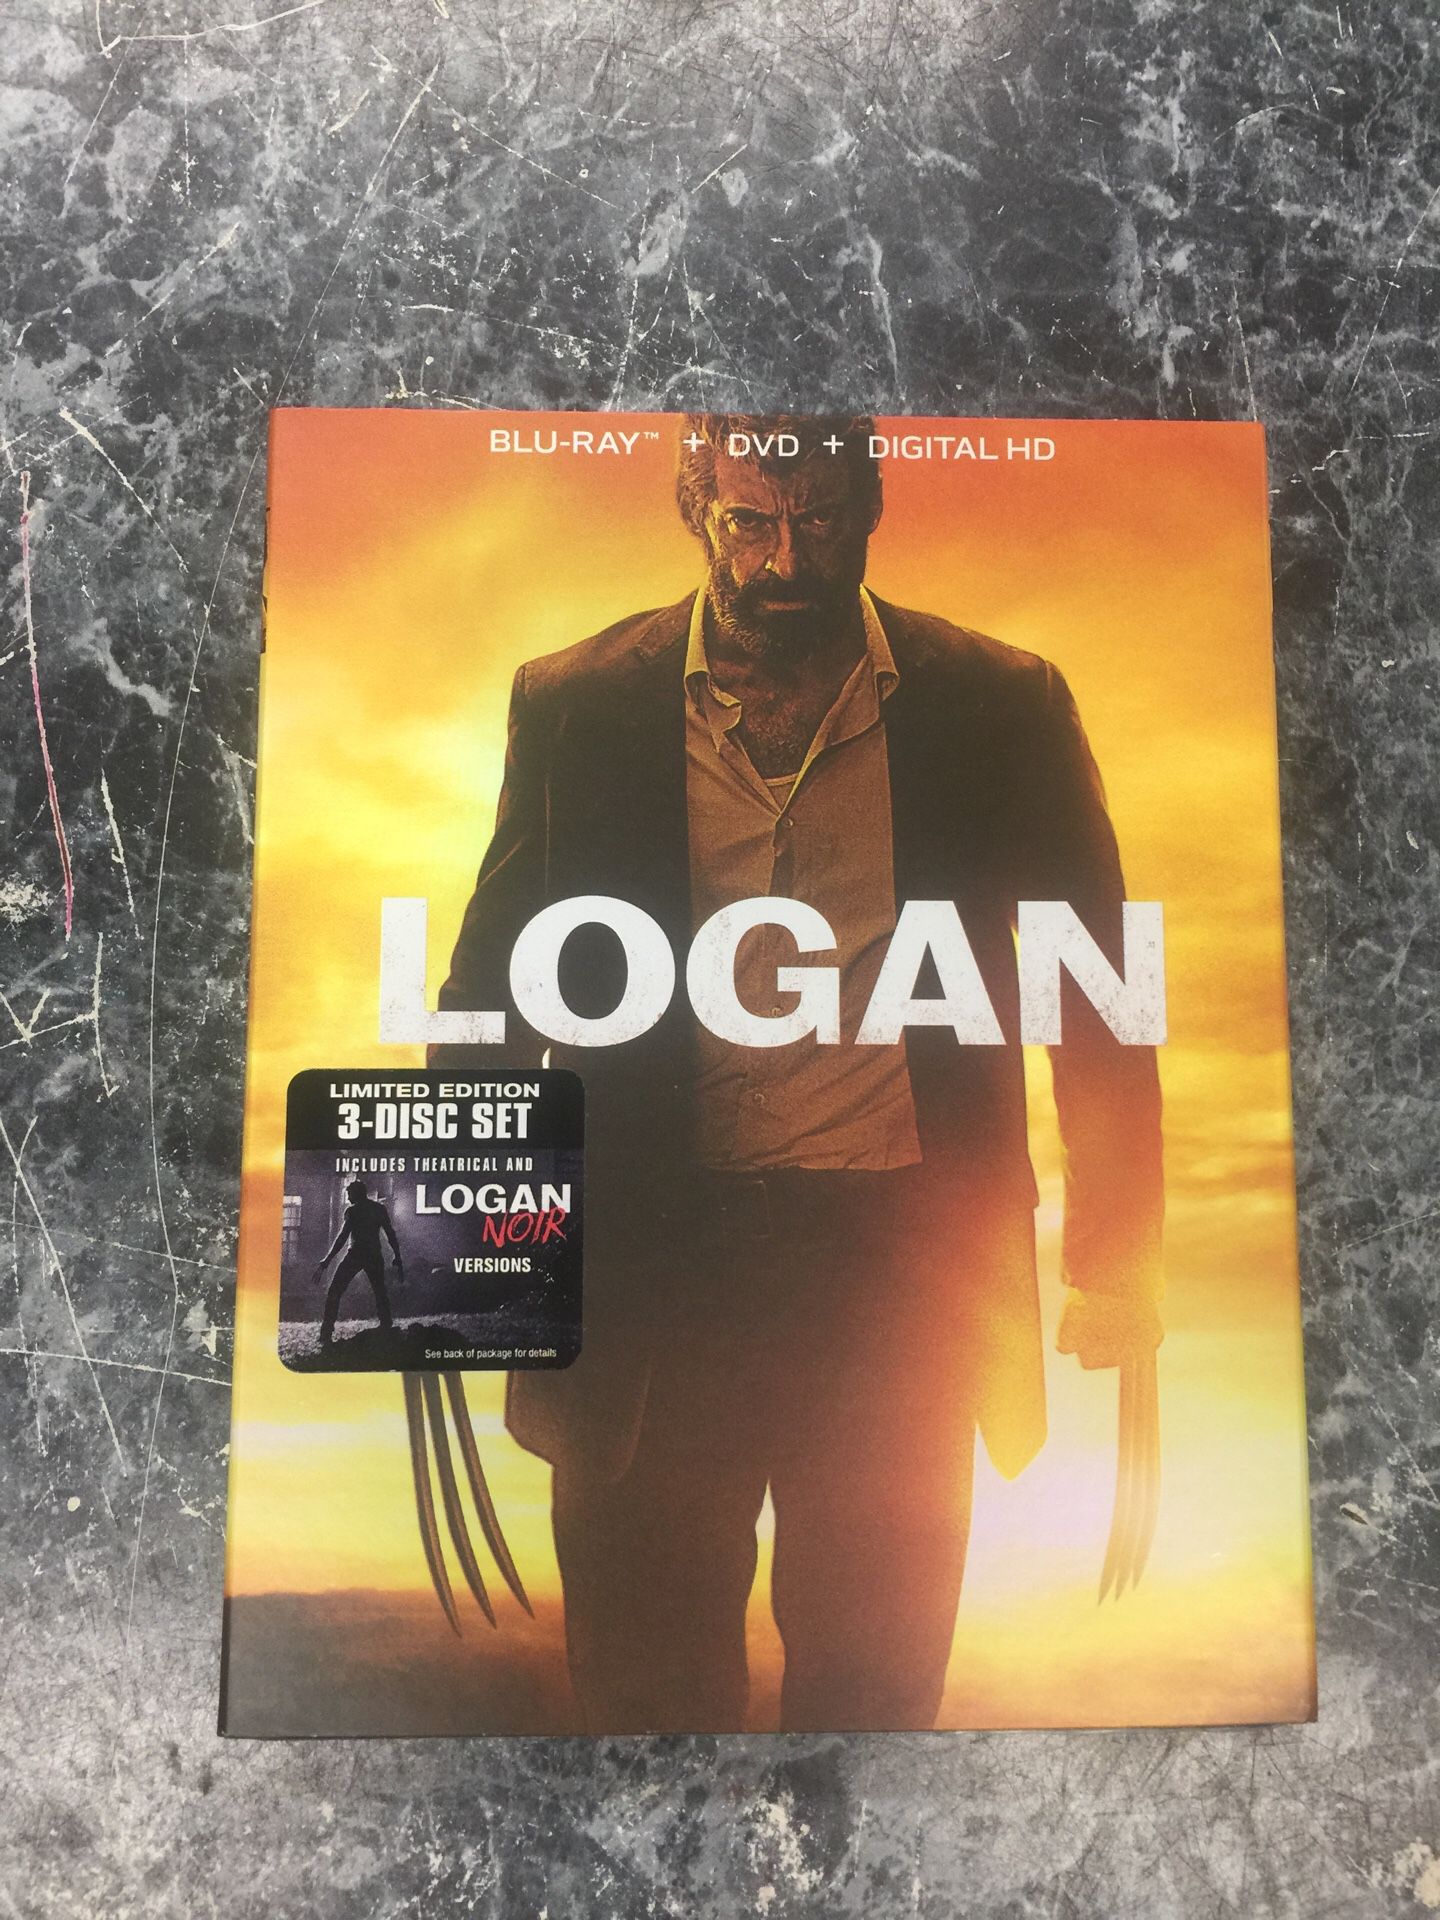 Logan Blu-ray + DVD + digital HD